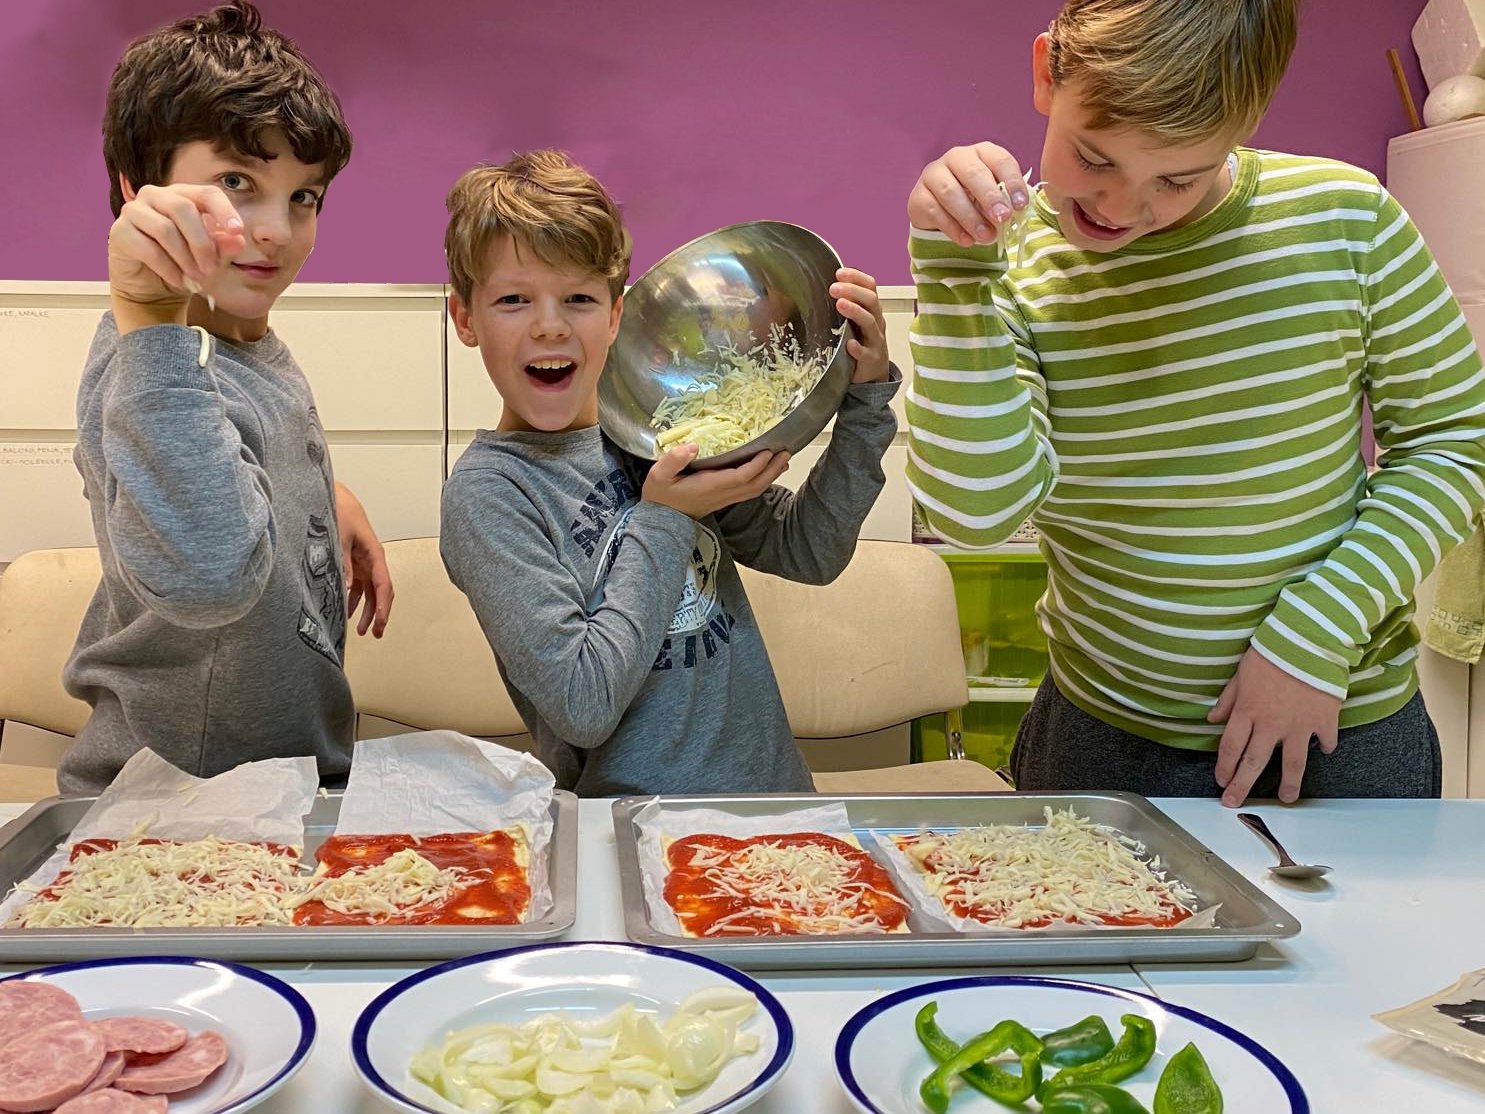 nadaljevalni kuharski tečaj za otroke